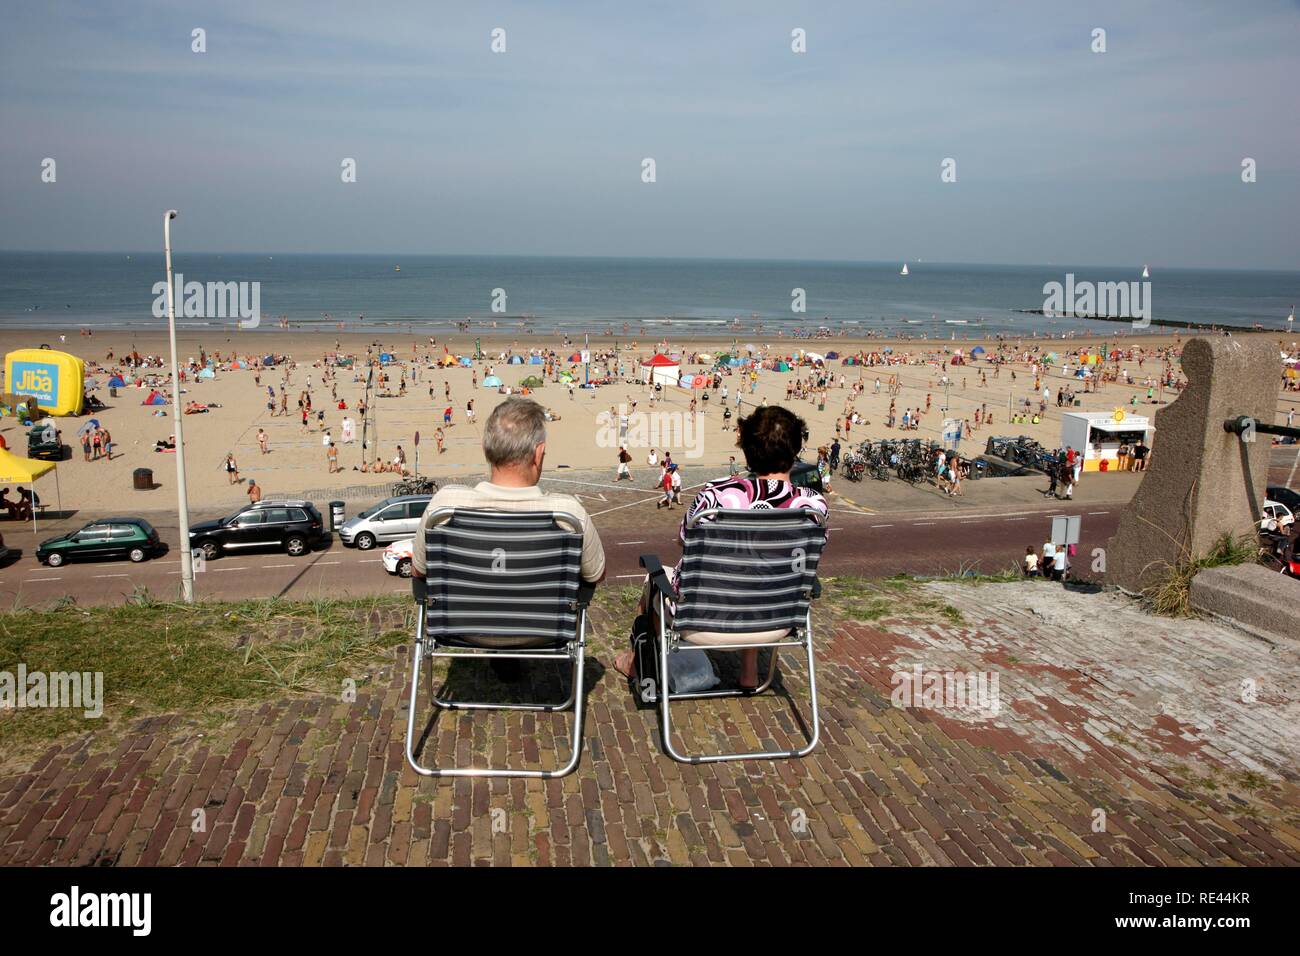 Haute saison sur la plage de Scheveningen, beach district de La Haye, la plus grande station balnéaire des Pays-Bas, Europe Banque D'Images